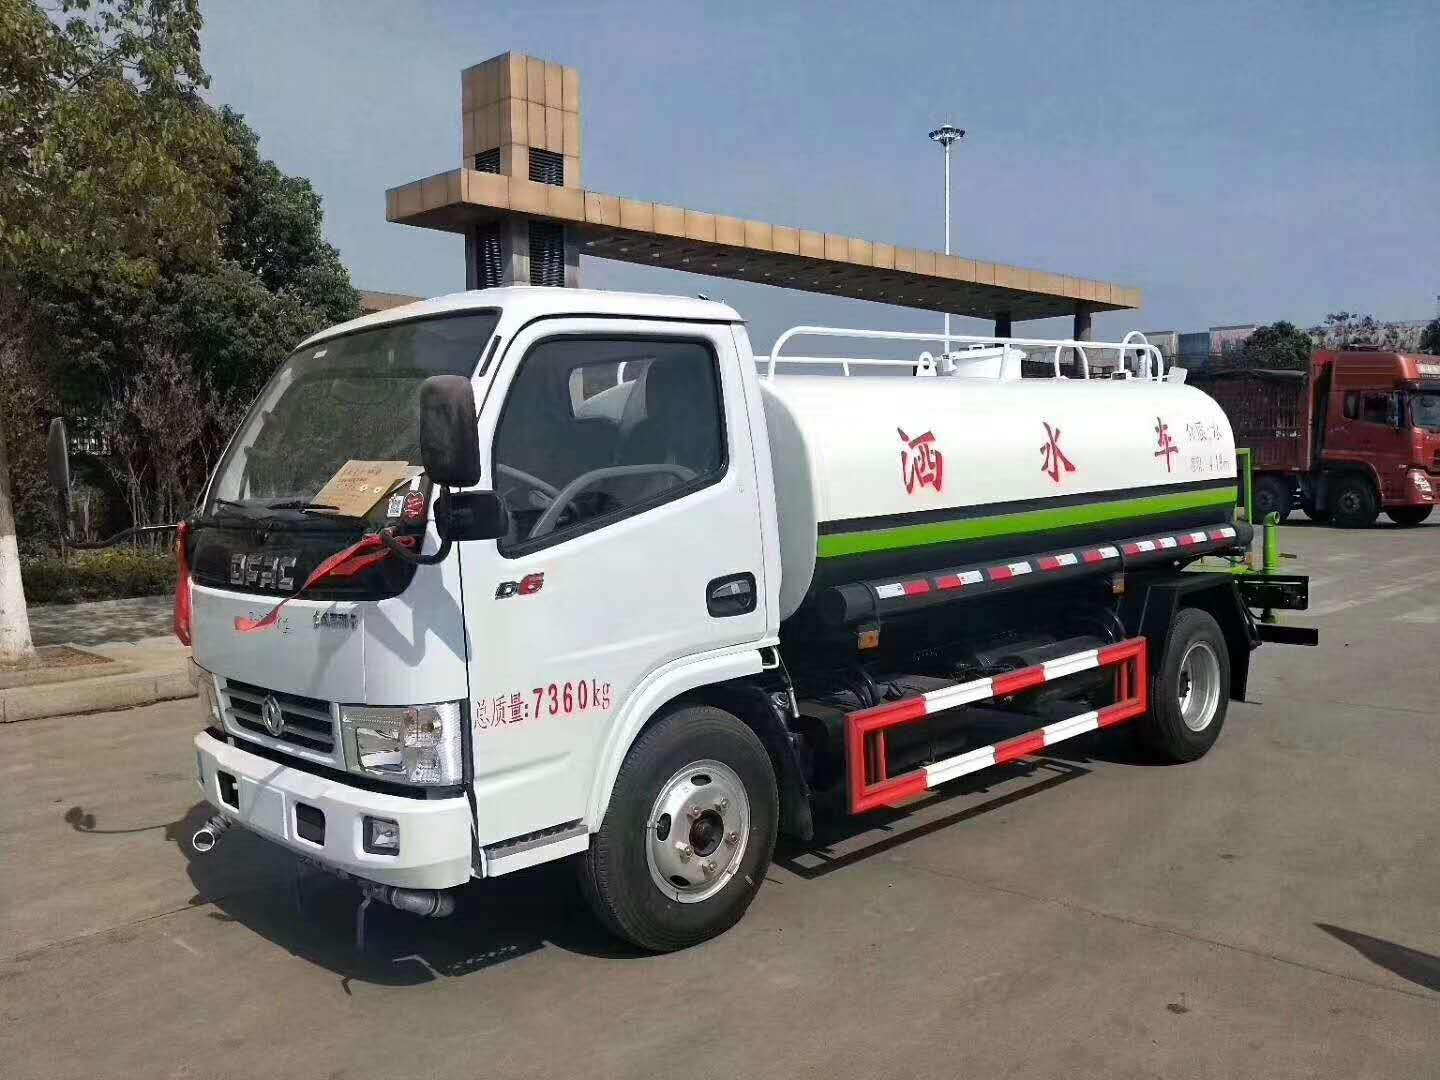 【随州】绿化洒水车 价格6.30万 二手车